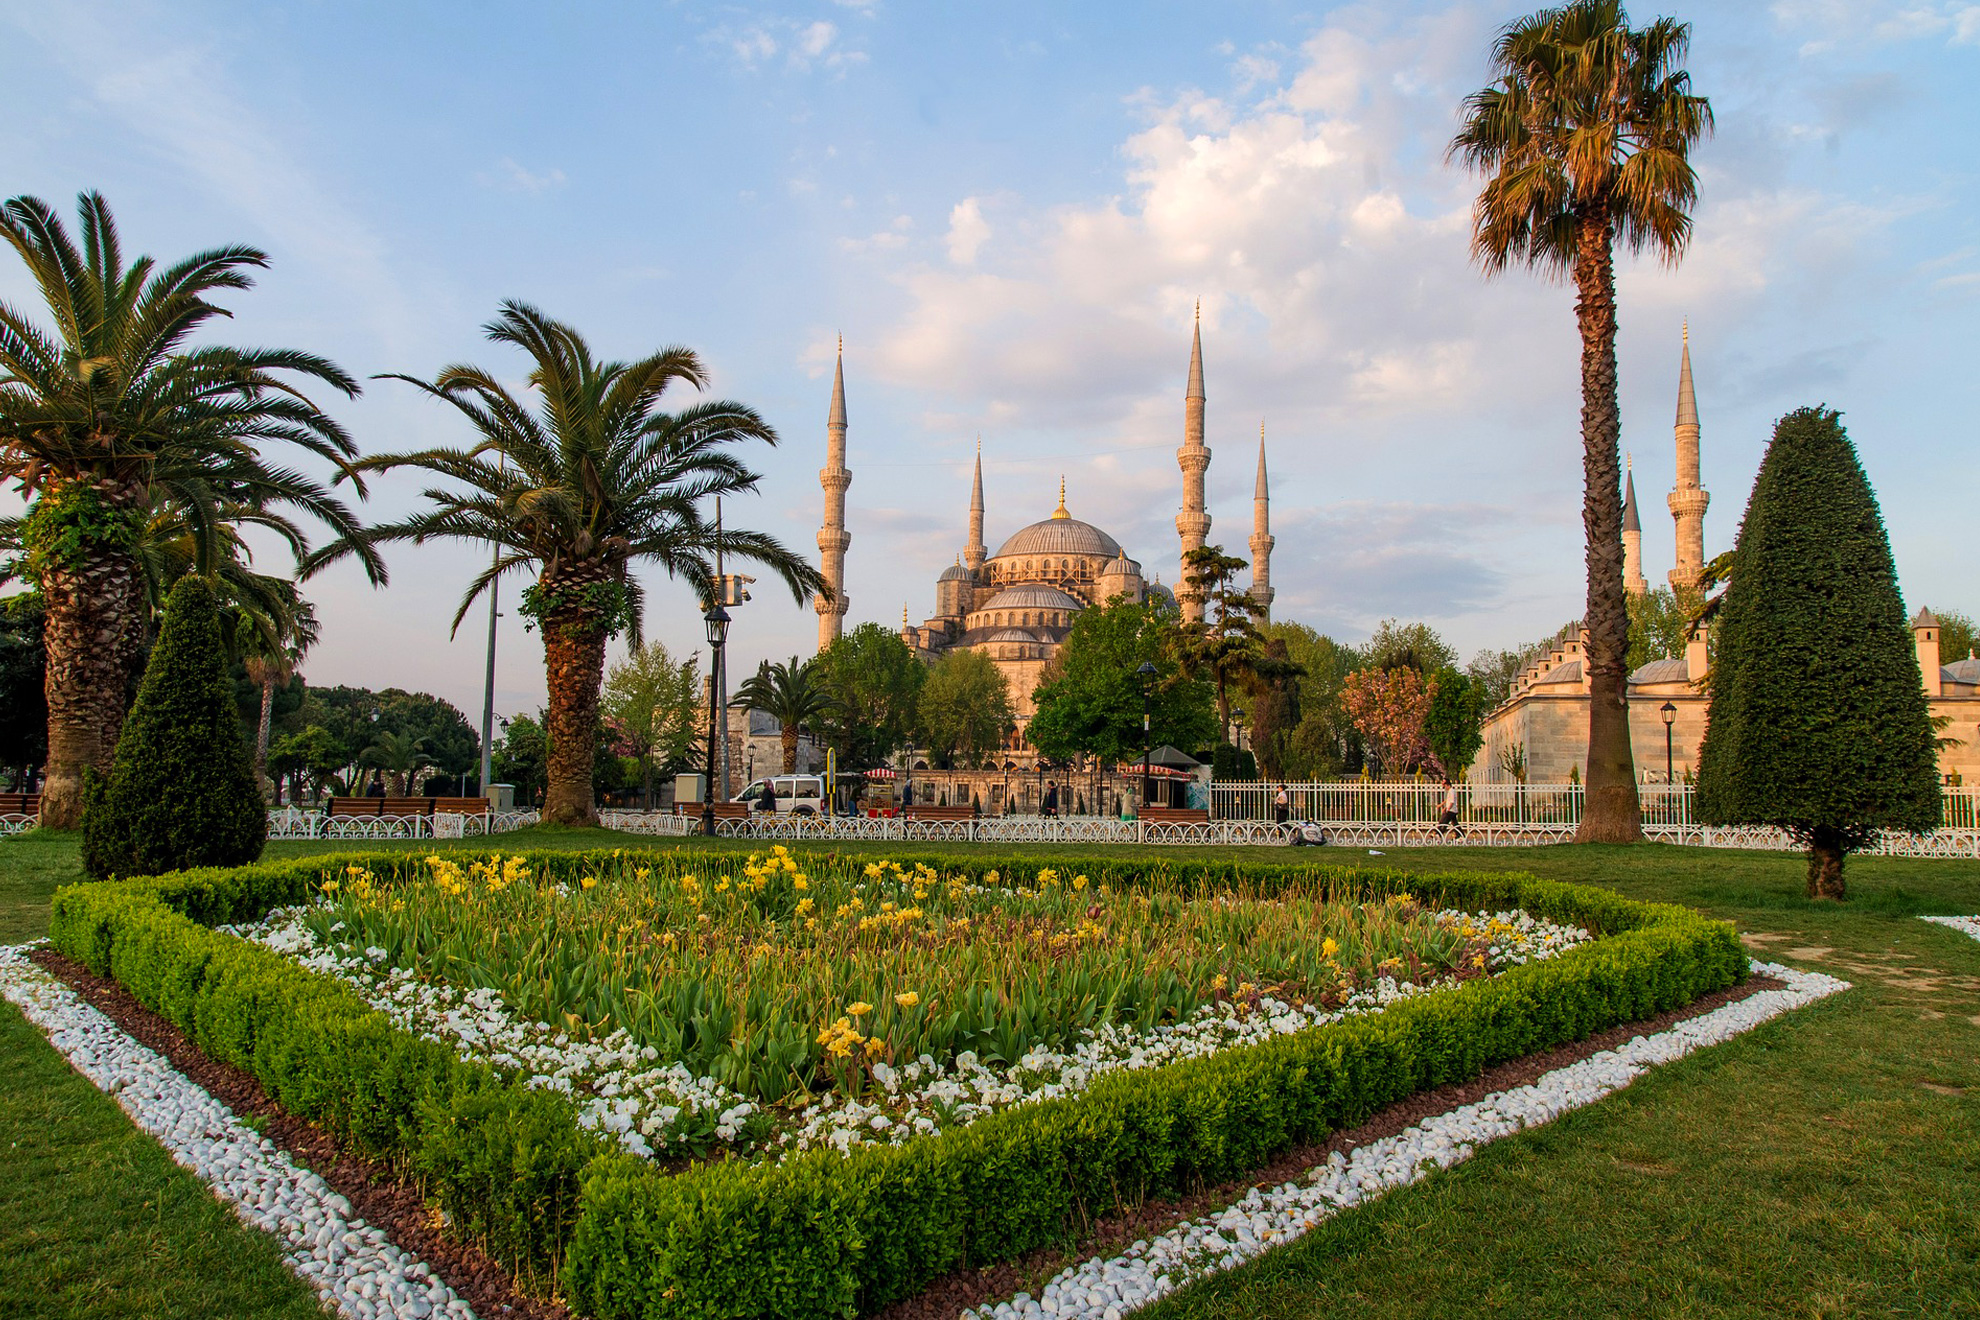 Великден и Светите места в Истанбул, 3 нощувки - Синята джамия (Султан Ахмед), Истанбул, Турция - The Blue Mosque (Sultan Ahmed), Istanbul, Turkey